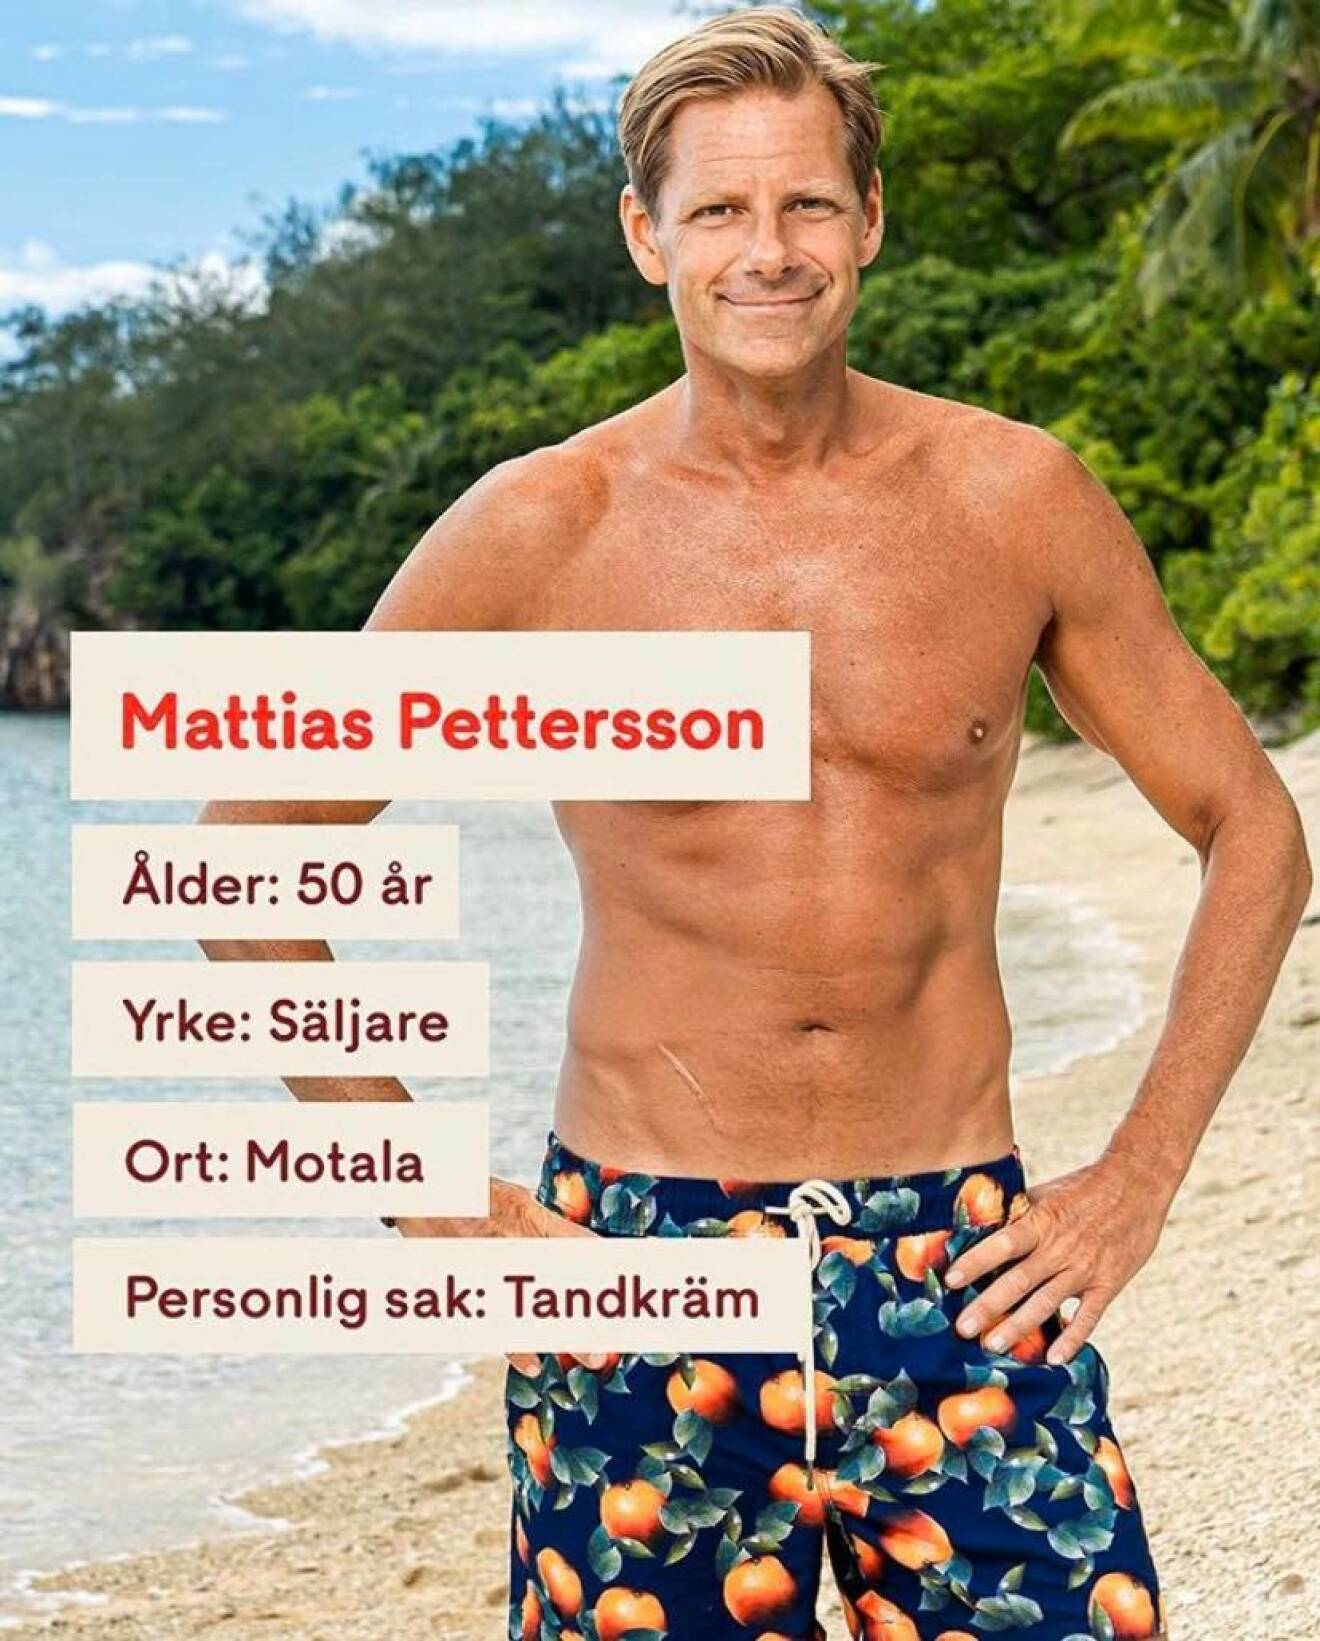 Mattias Pettersson i Robinson 2020